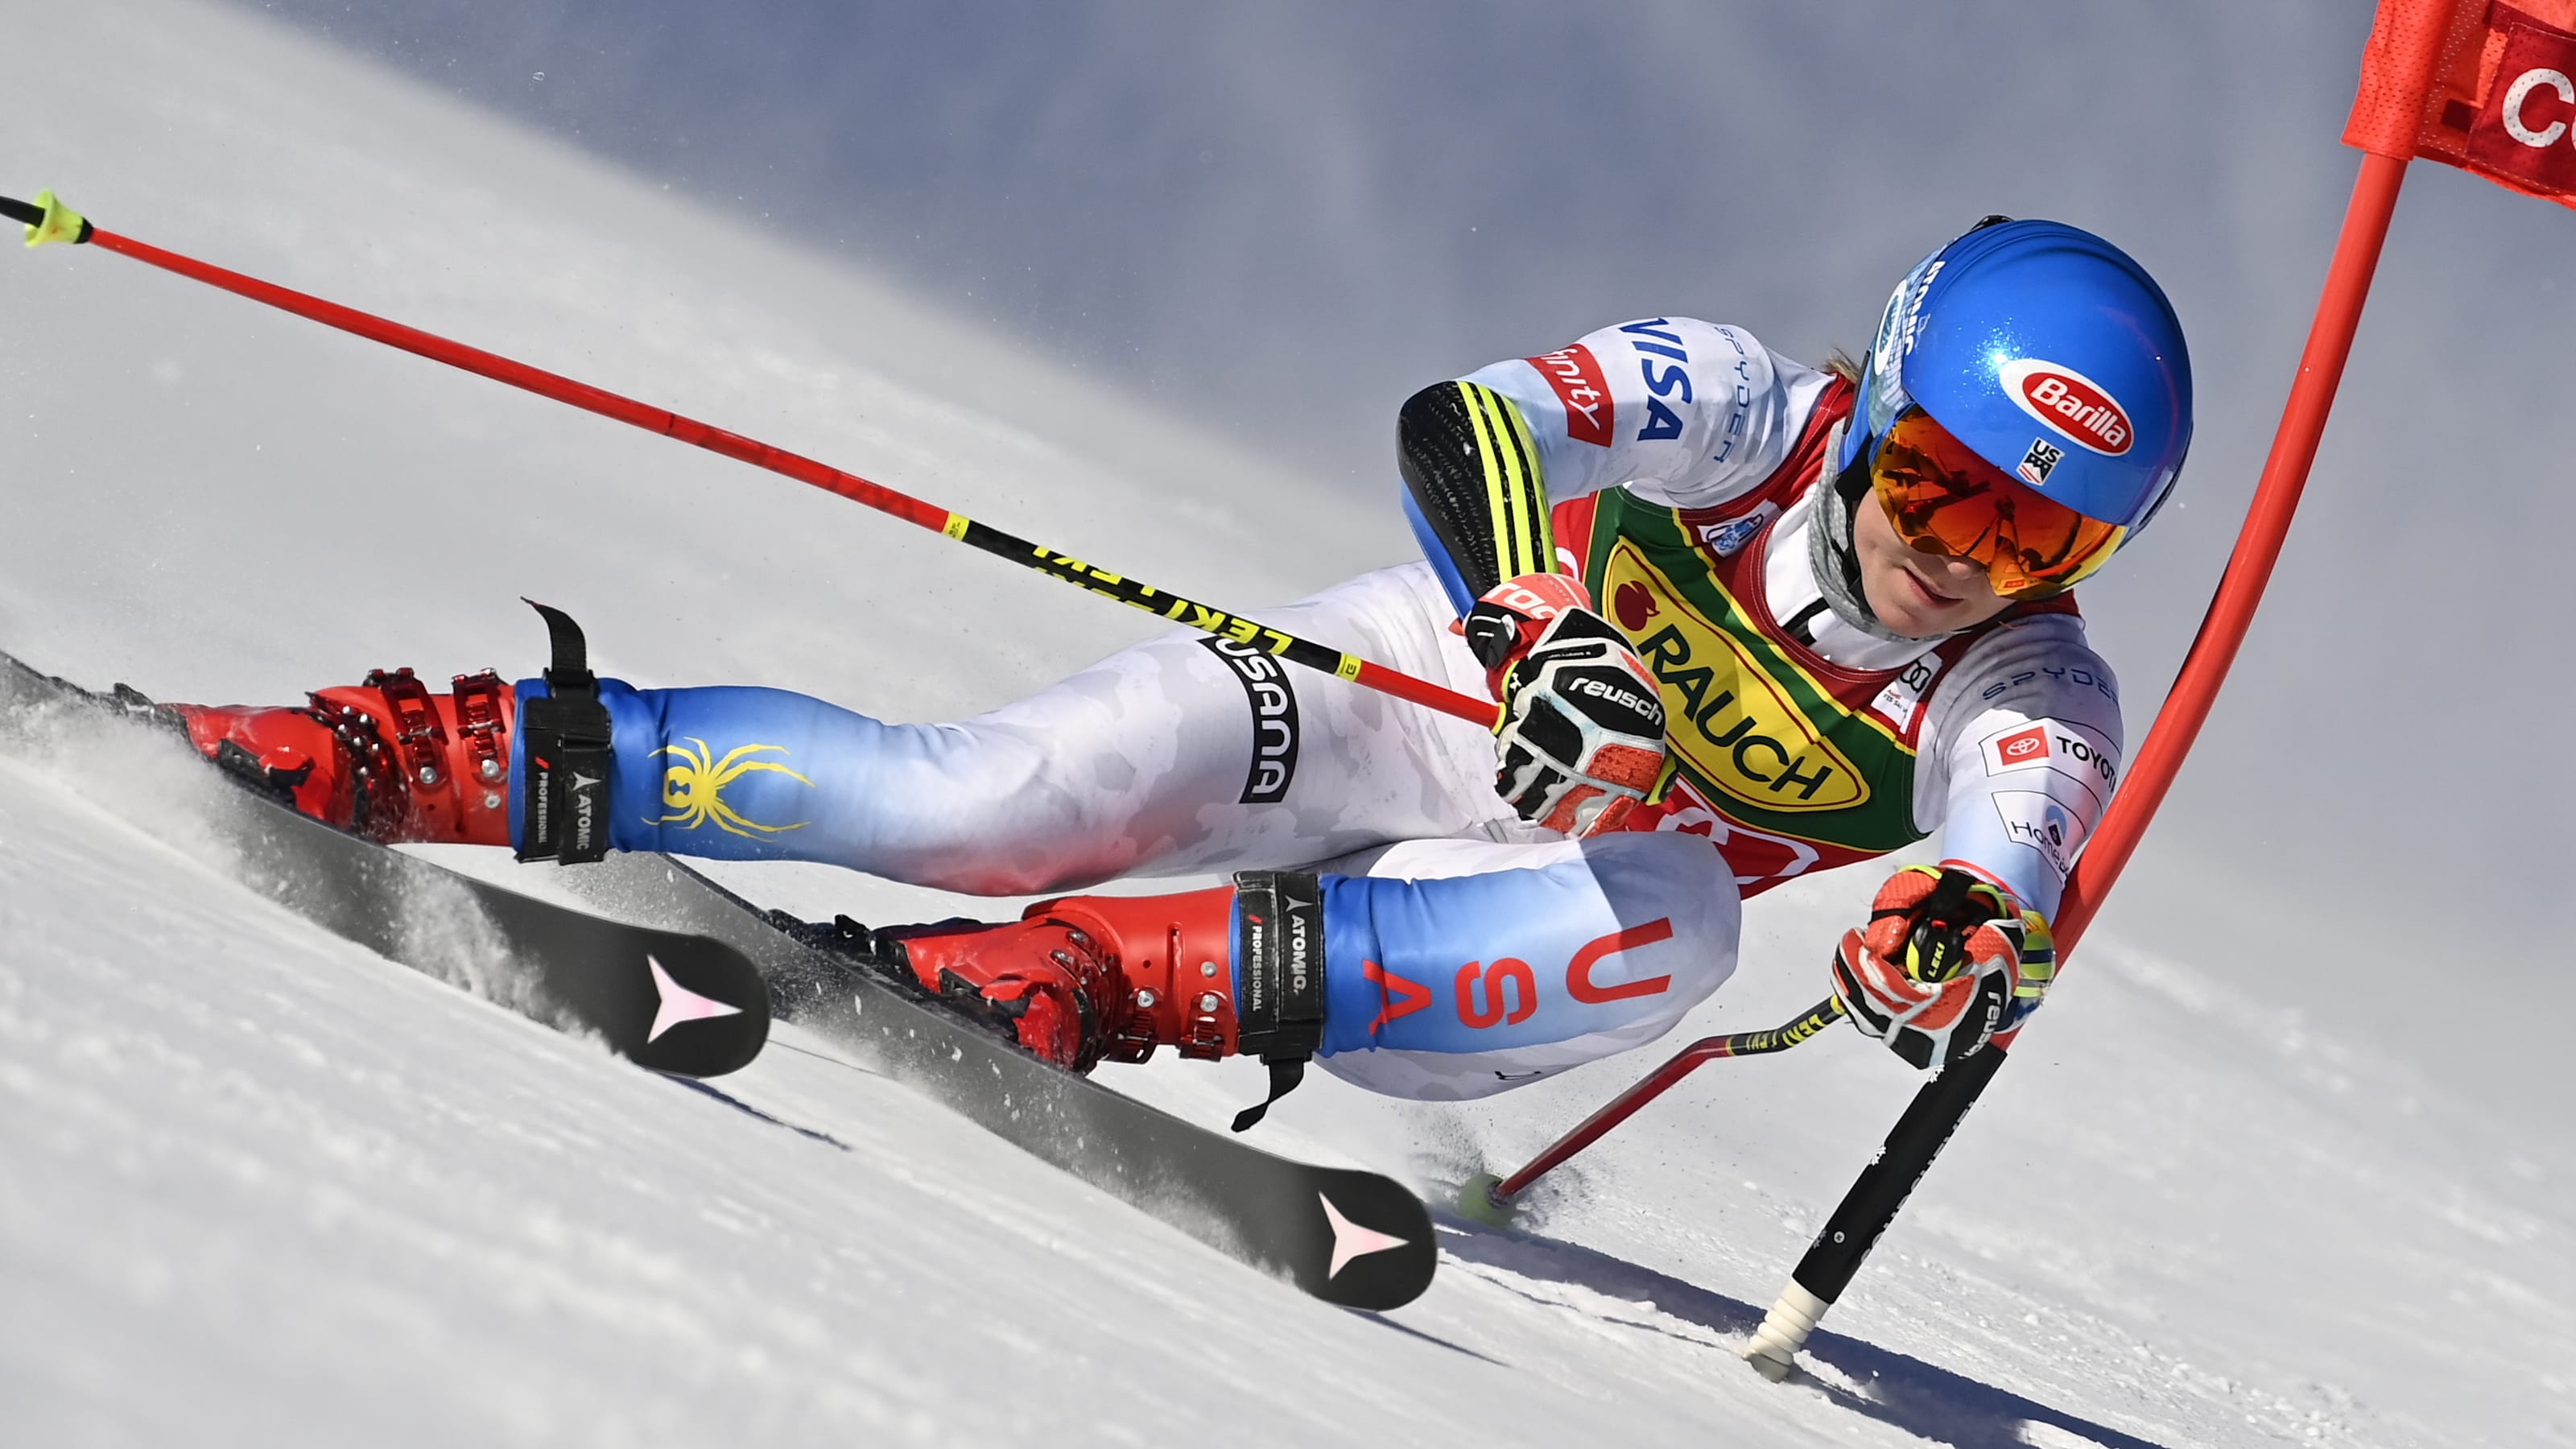 Por mal clima se aplazó la prueba de esquí alpino en los JJ.OO de Invierno Beijing 2022